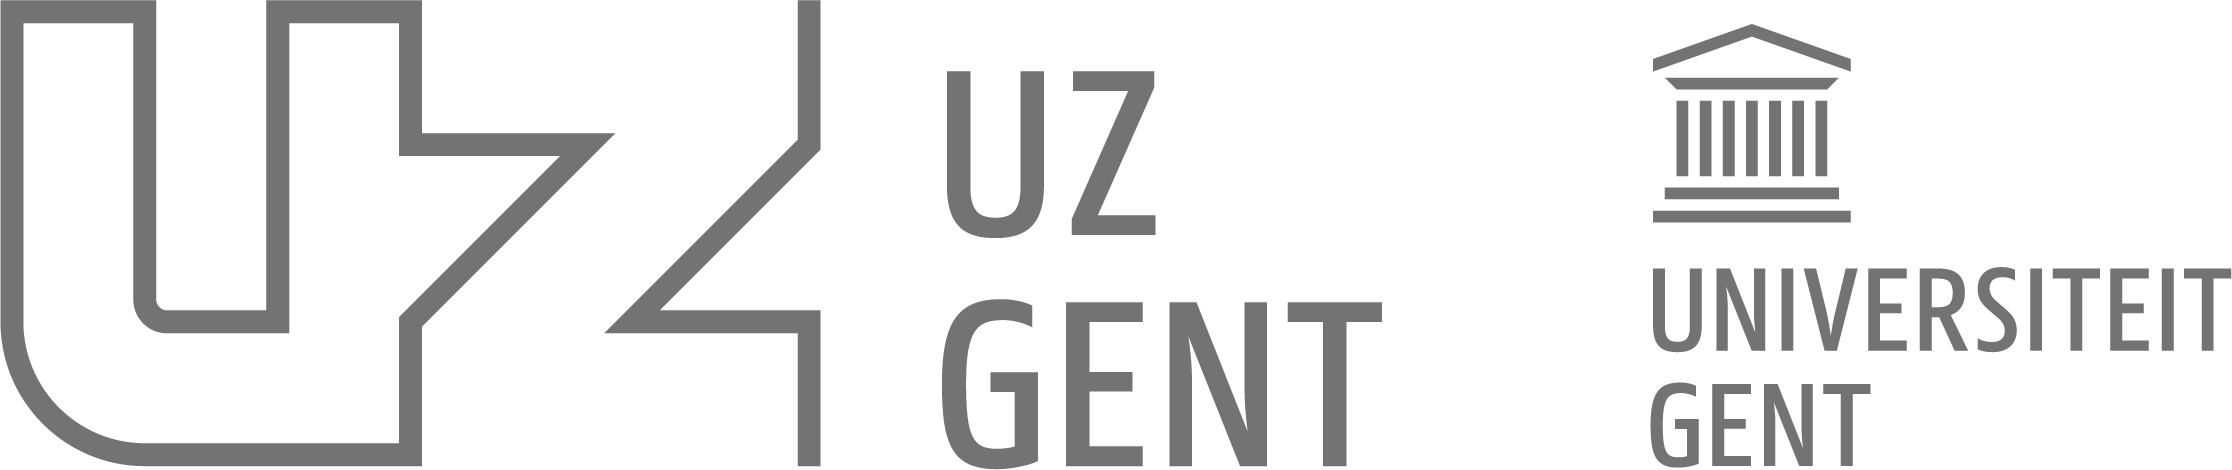 UZ Gent Universiteit Gent